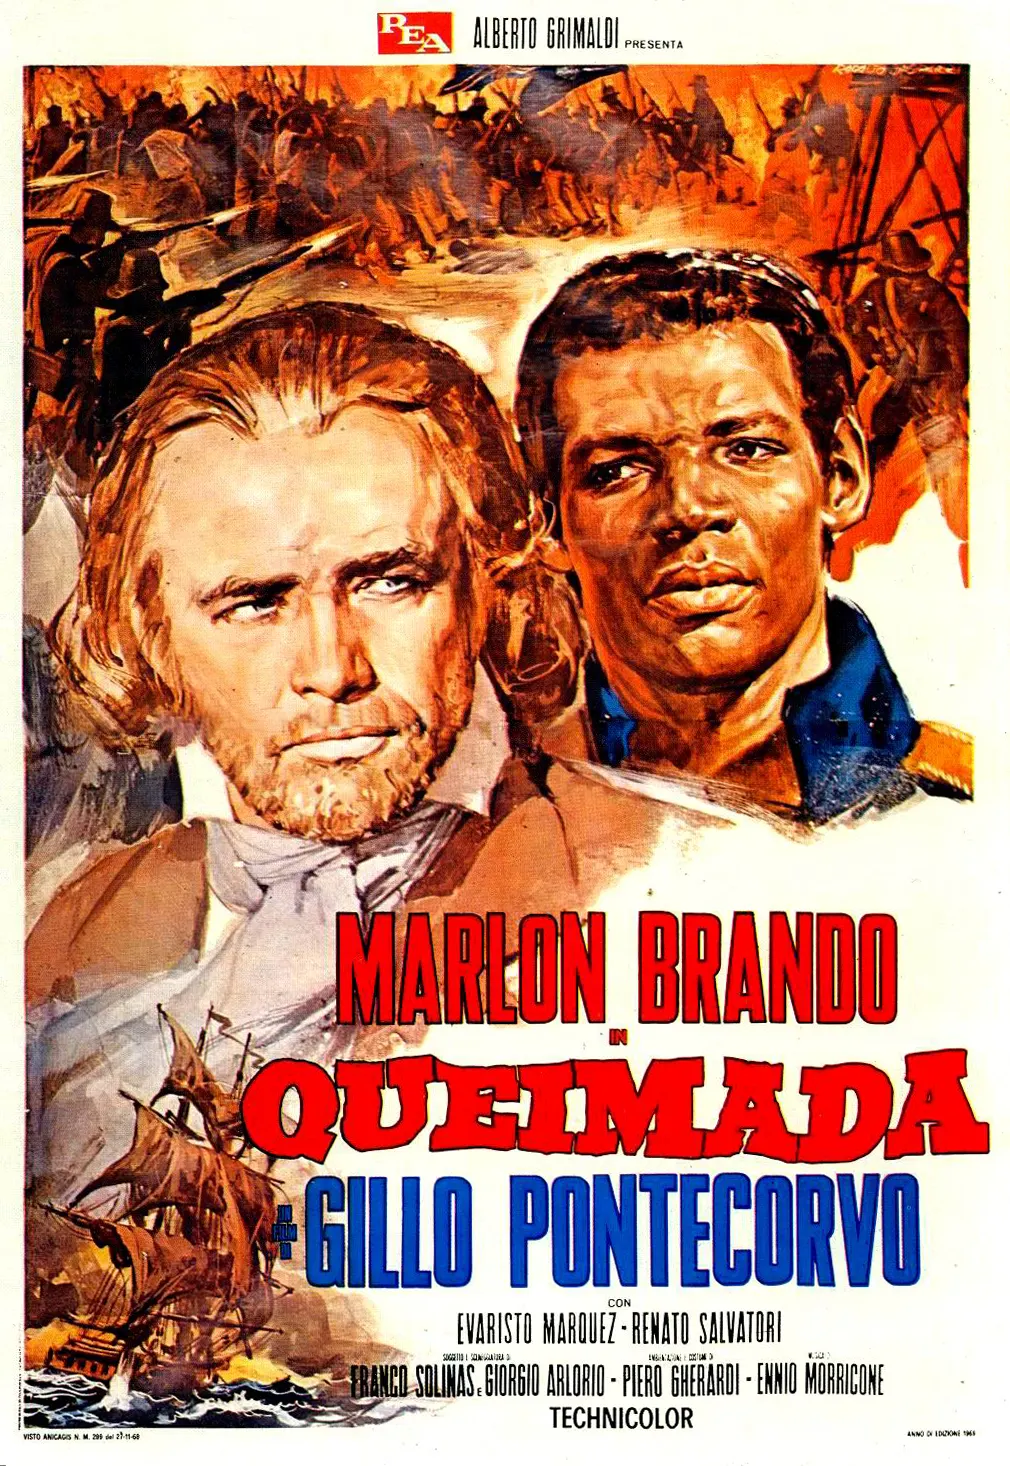 Queimada - 1969, afiche de la película